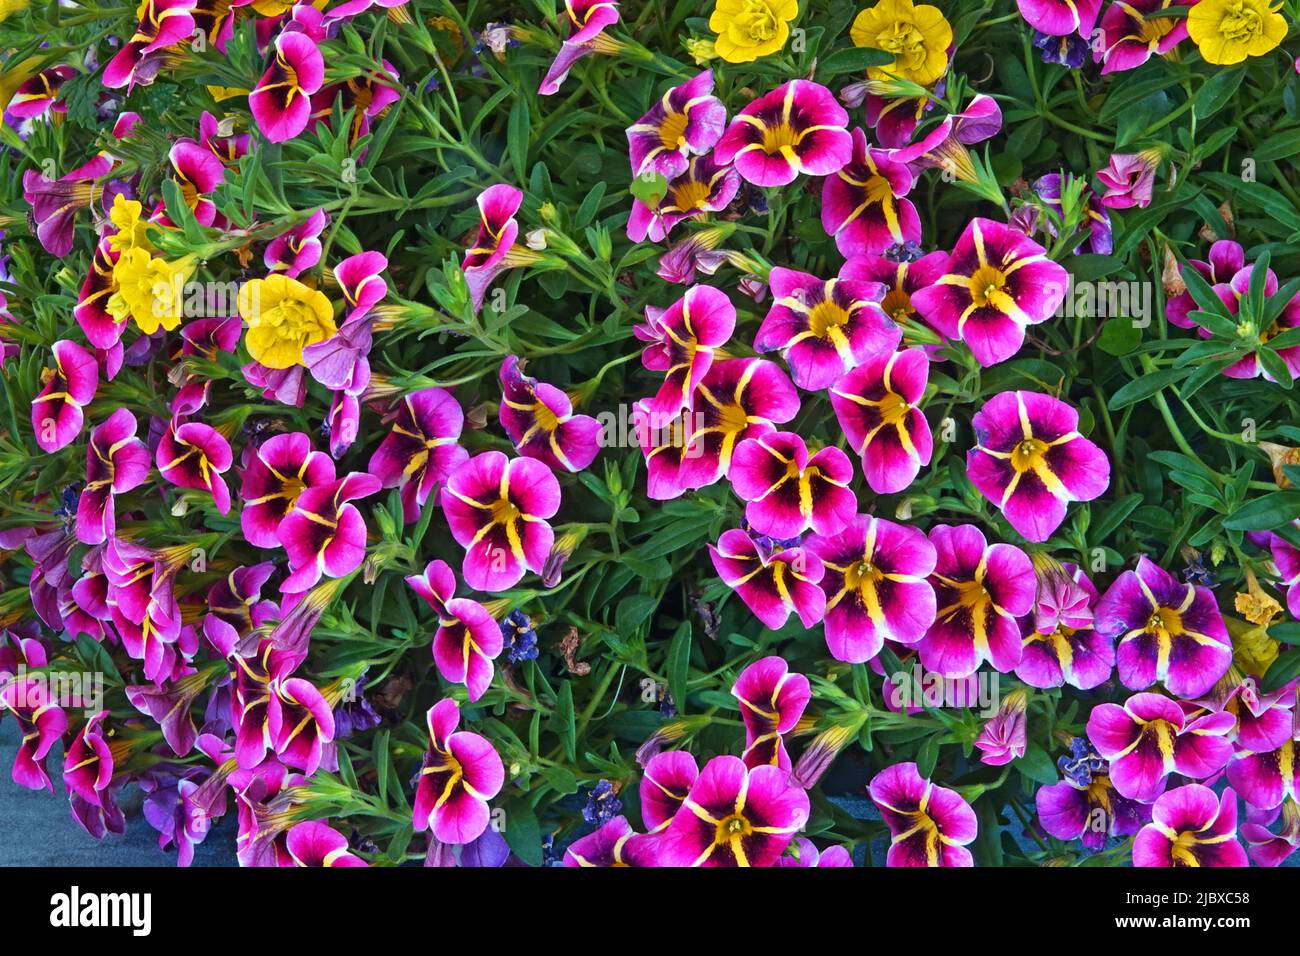 Un panier de fleurs printanières appelé Calibrachoa, également appelé des cloches et des millions de cloches. Banque D'Images